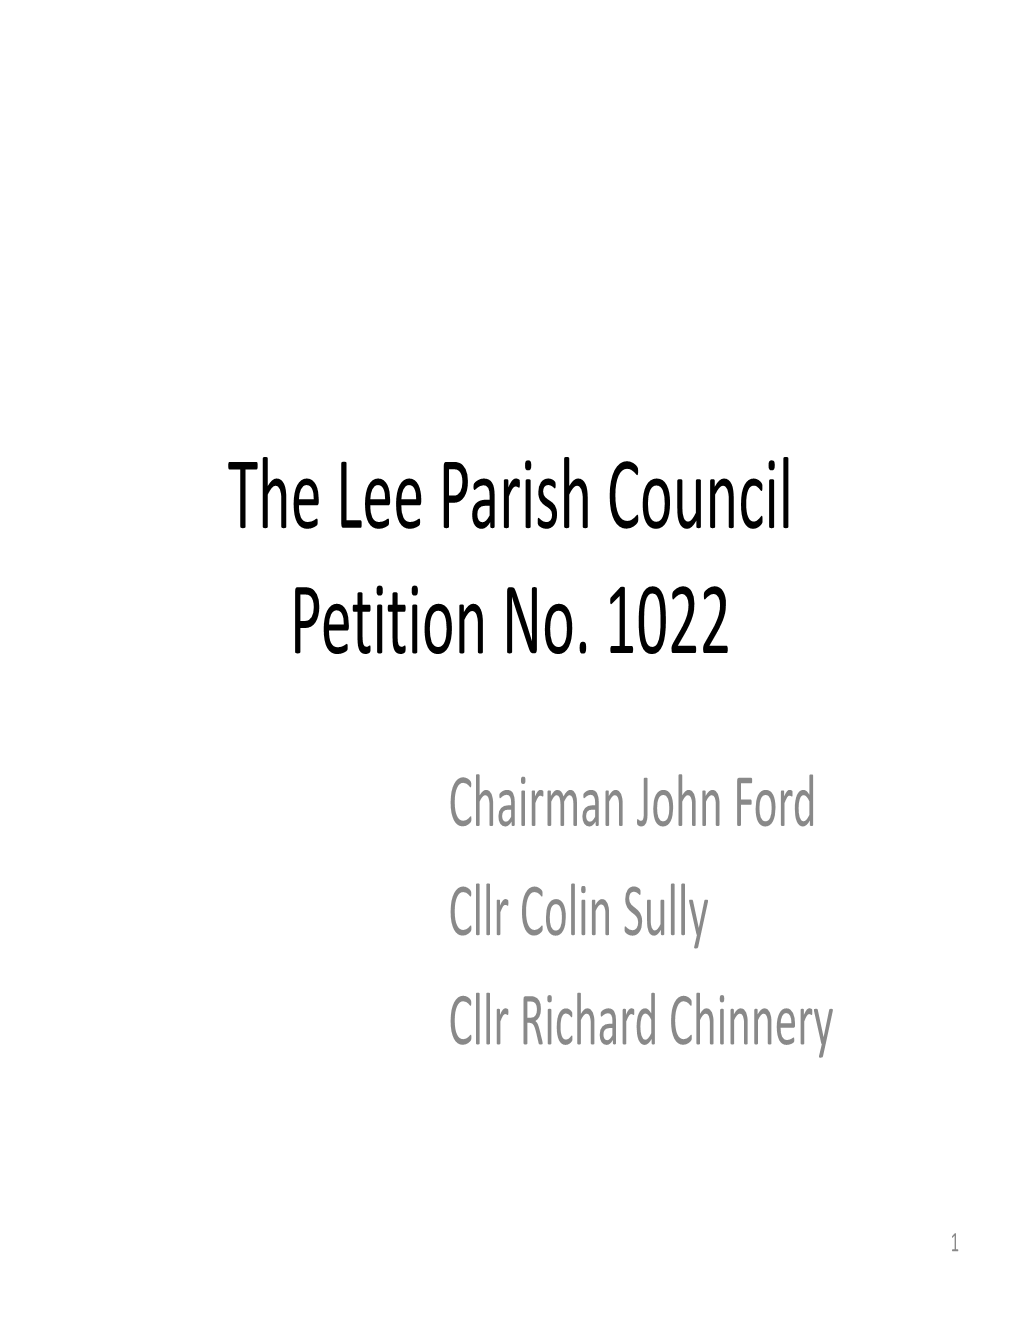 The Lee Parish Council Petition No. 1022